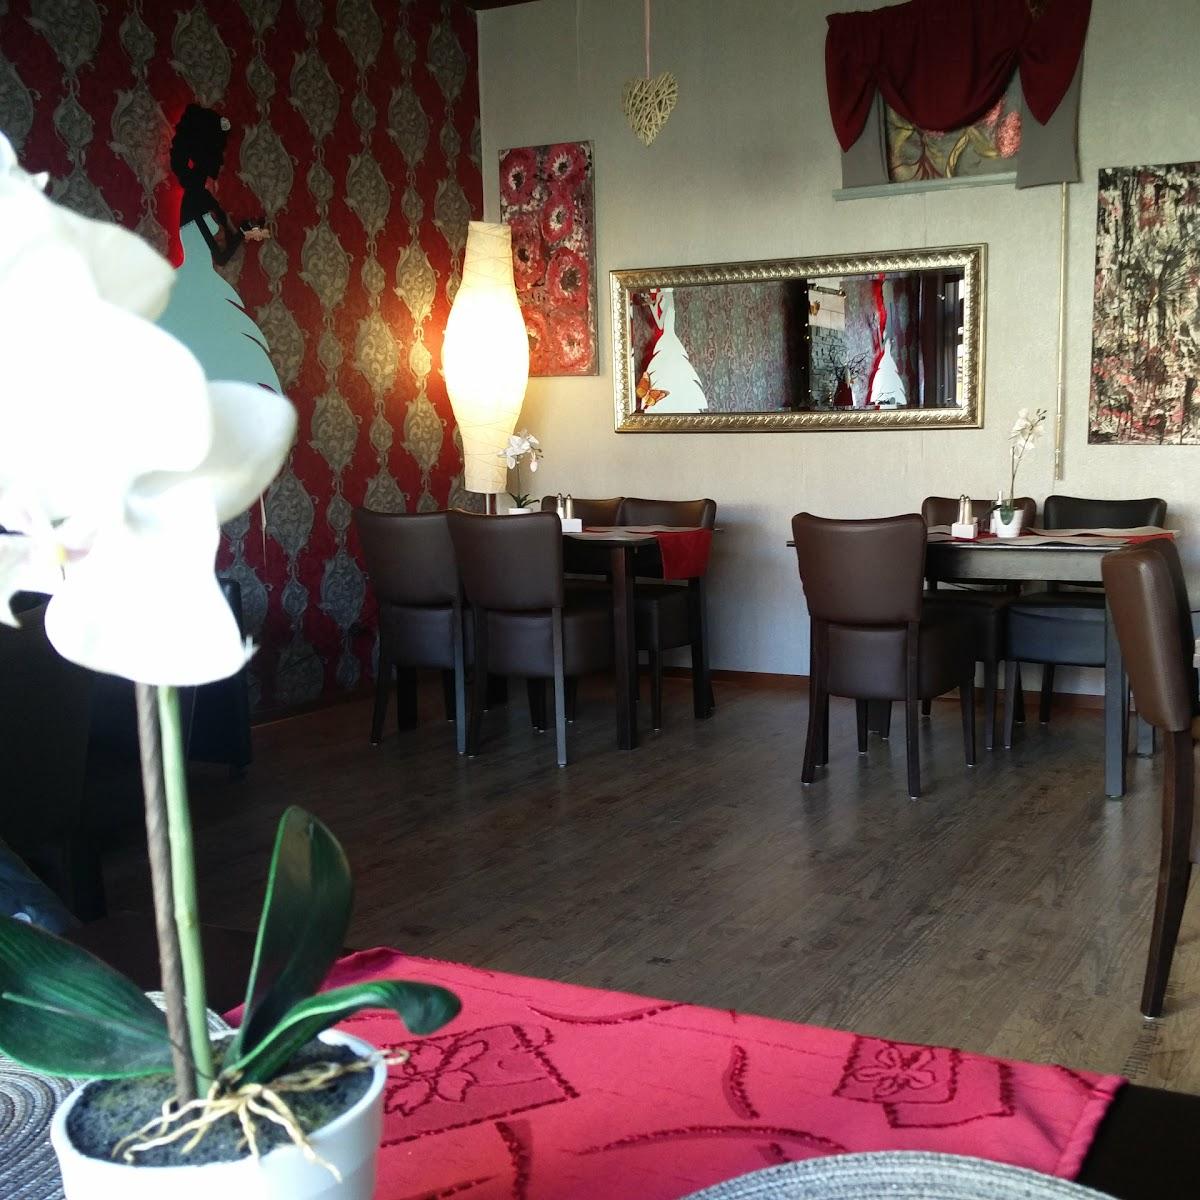 Restaurant "Cafe Mira" in Salzgitter